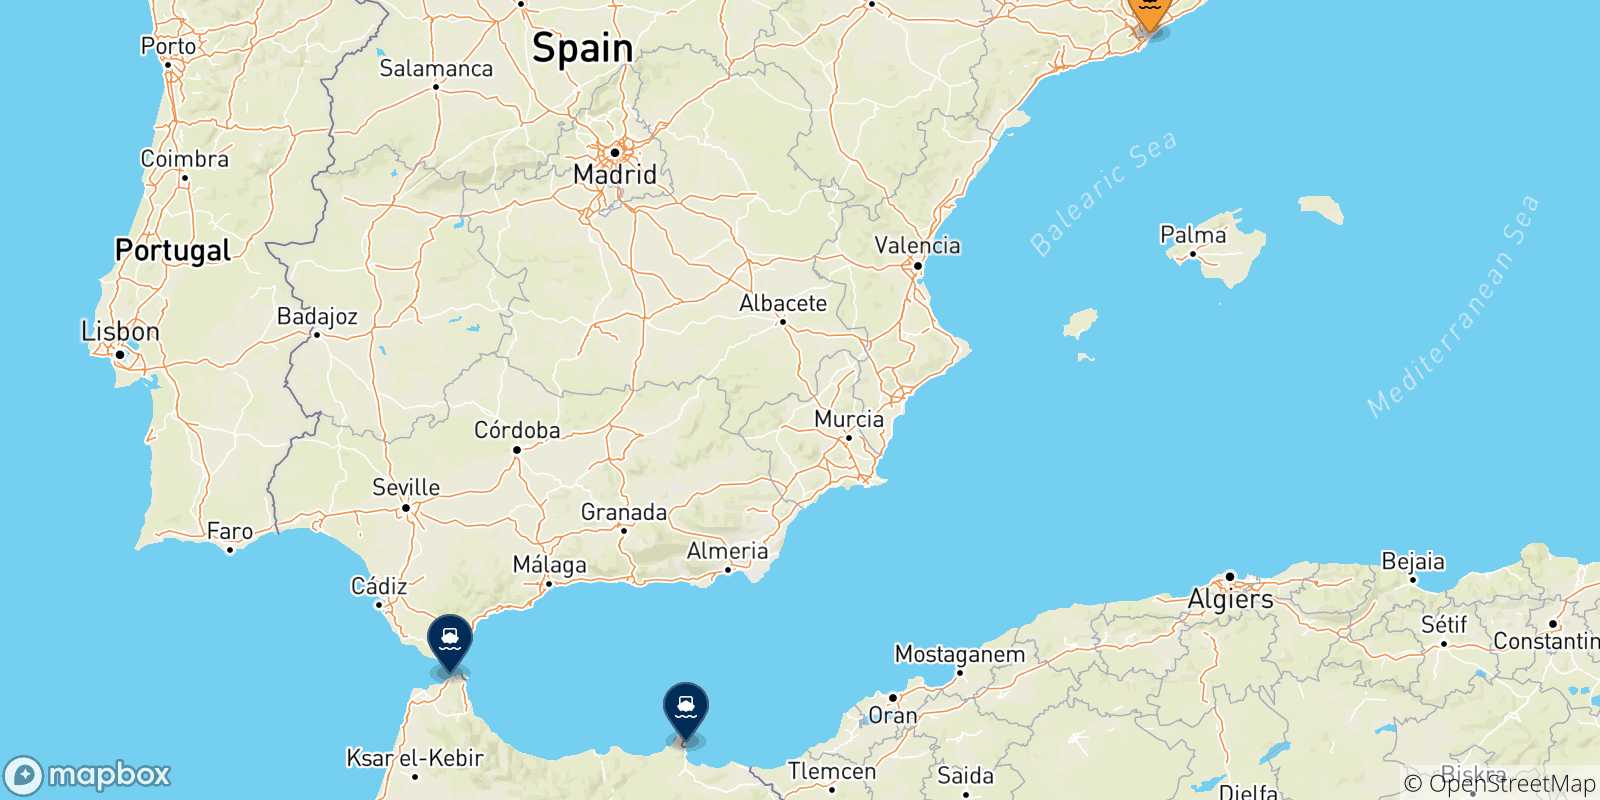 Mappa delle possibili rotte tra Barcellona e il Marocco